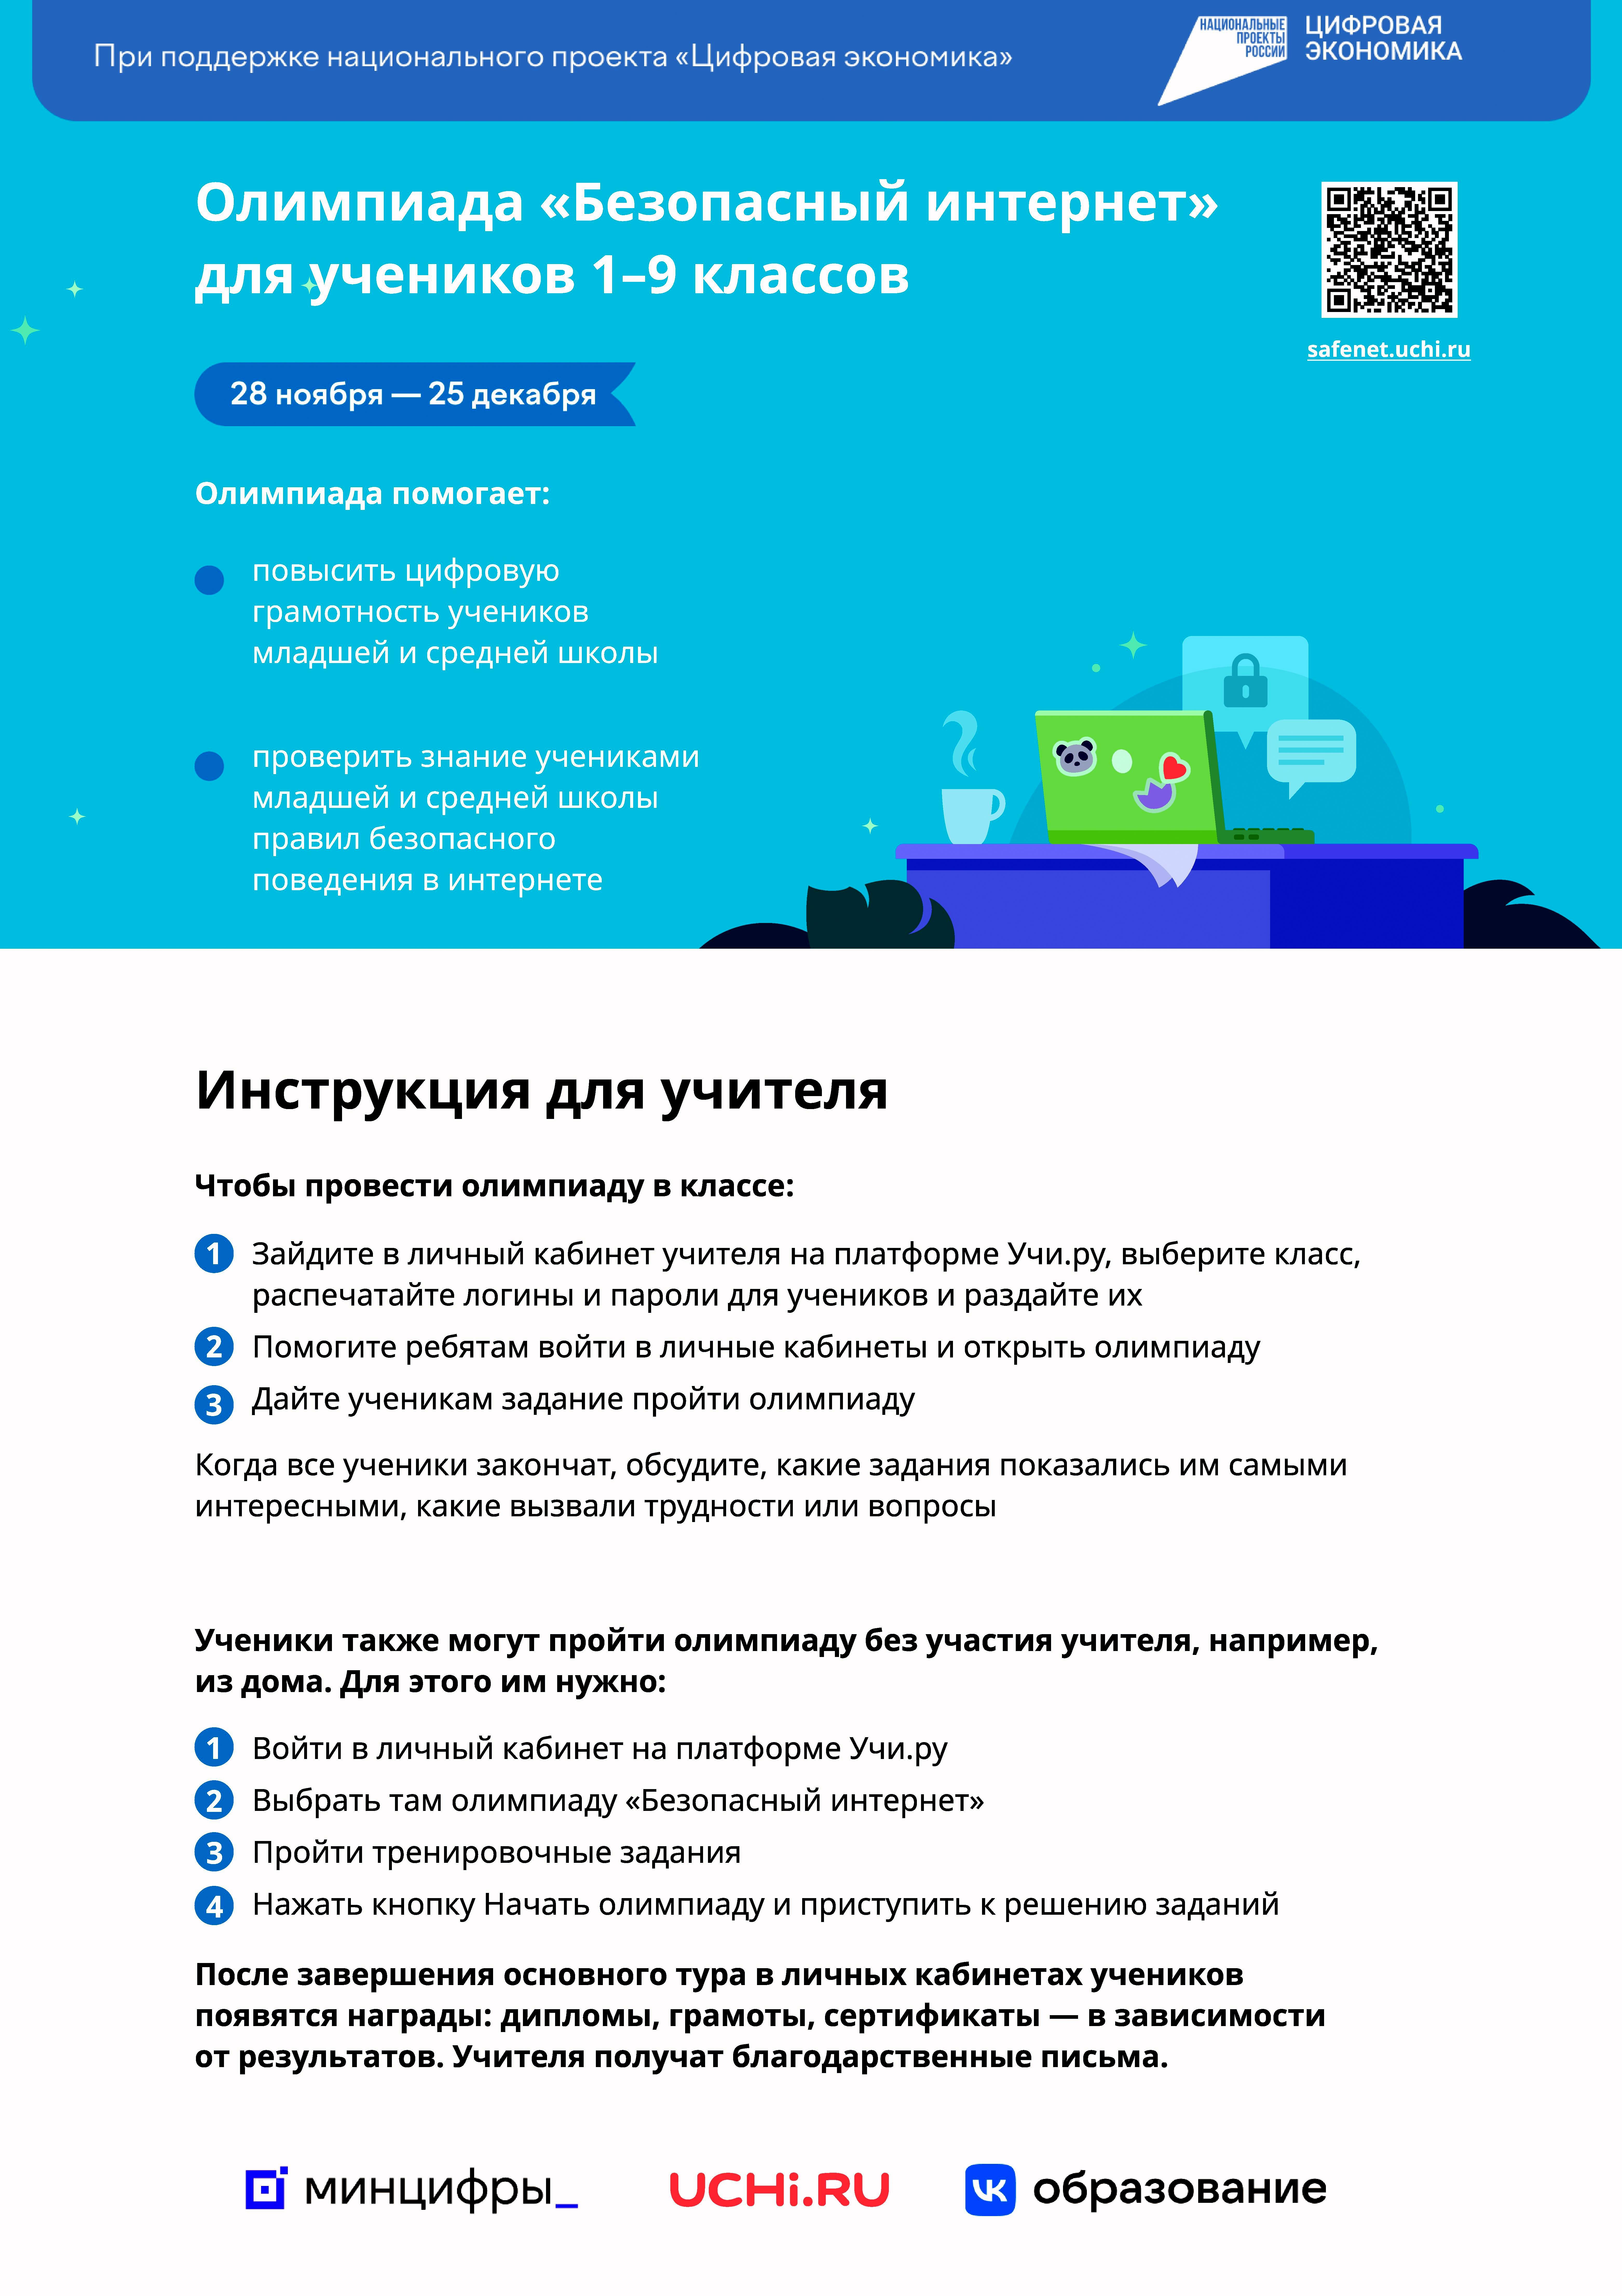 Всероссийская  онлайн-олимпиада  «Безопасный  интернет».